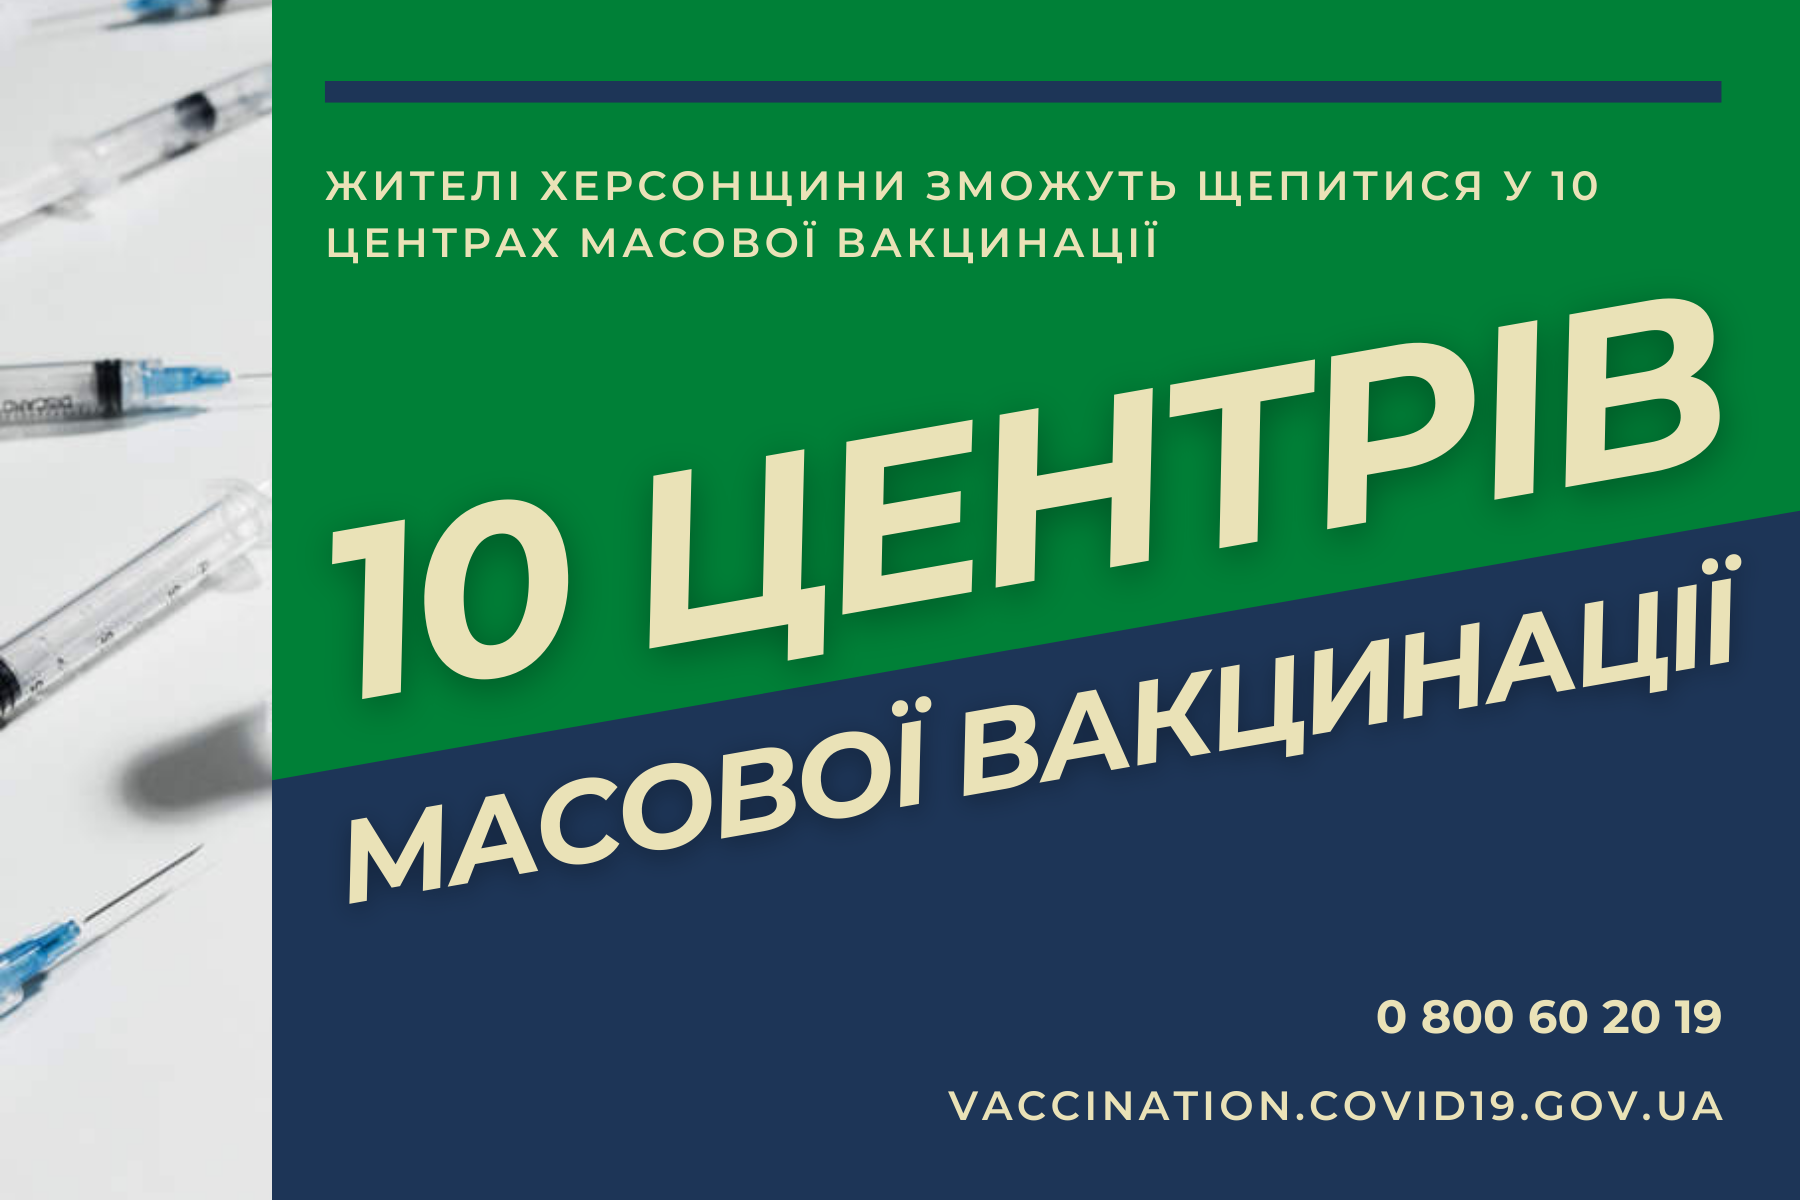 Жителі Херсонщини зможуть щепитися у 10 центрах масової вакцинації